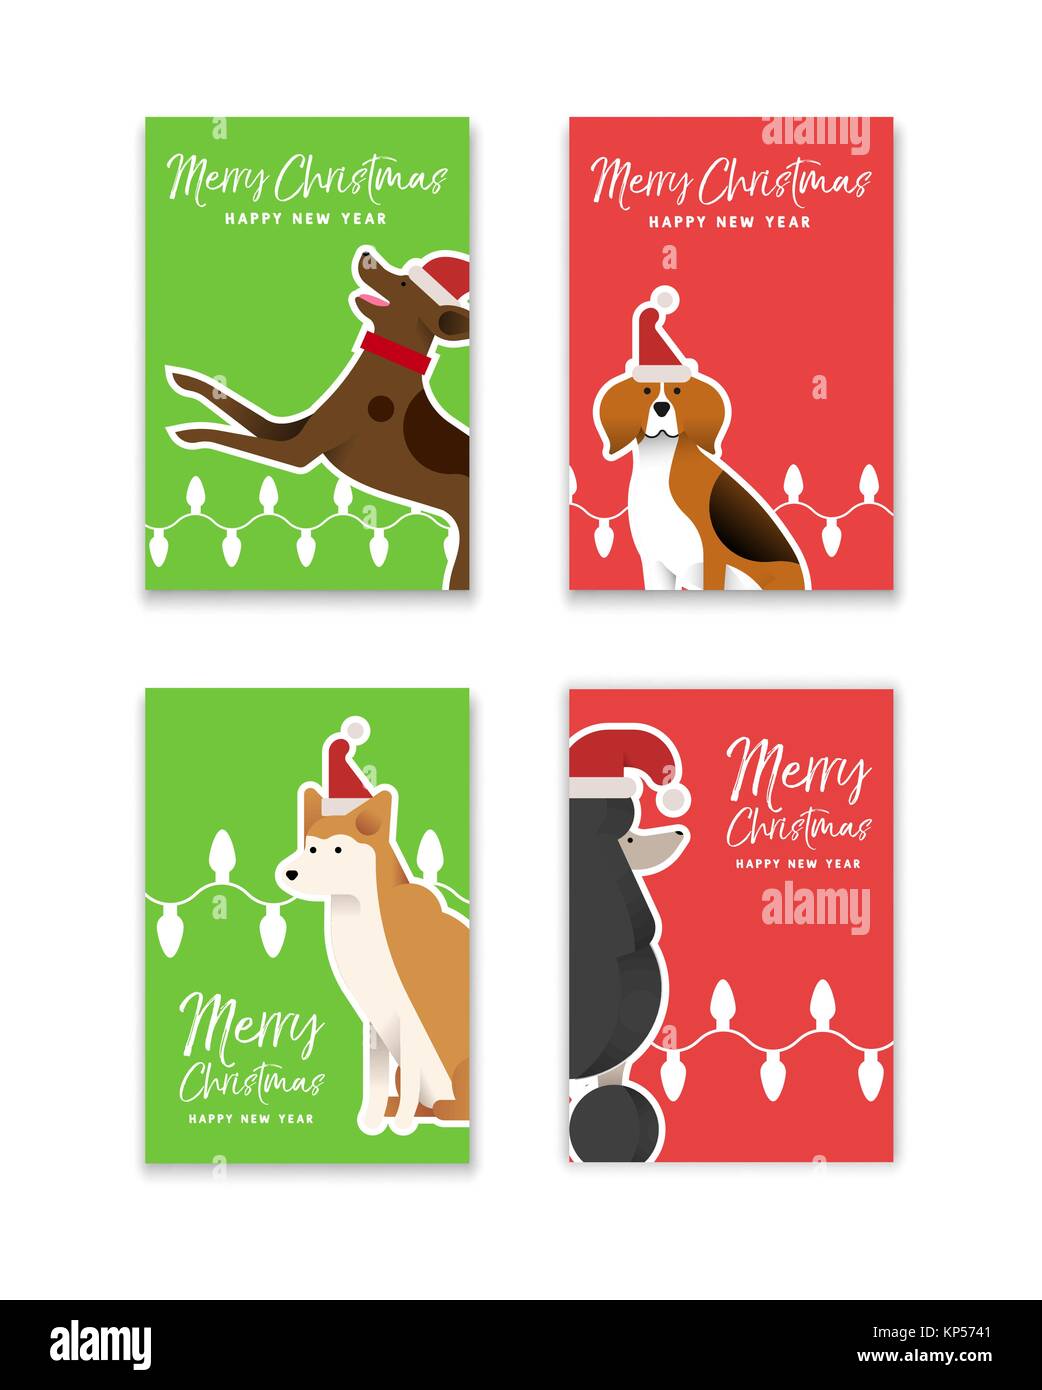 Frohe Weihnachten Frohes Neues Jahr Grußkarte mit lustigen Hund Illustrationen im flachen Stil eingestellt. Mit Beagle, Deutscher Schäferhund und Pudel Rassen. EPS 10v Stock Vektor